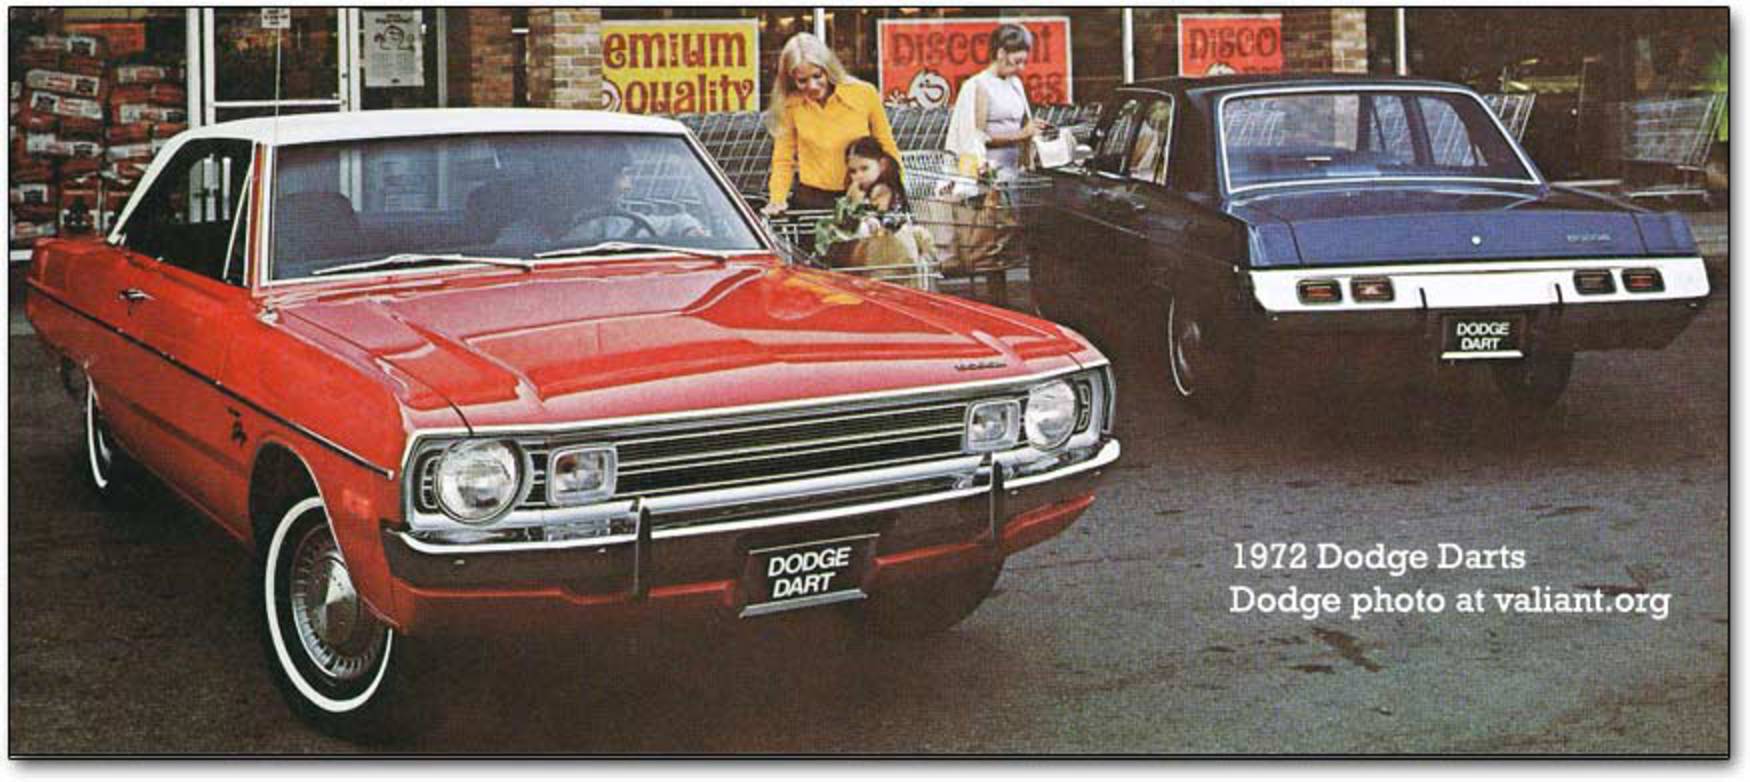 Les Dodge Dart, Demon et Swinger de 1972 (Valiant, Duster et Scamp étaient